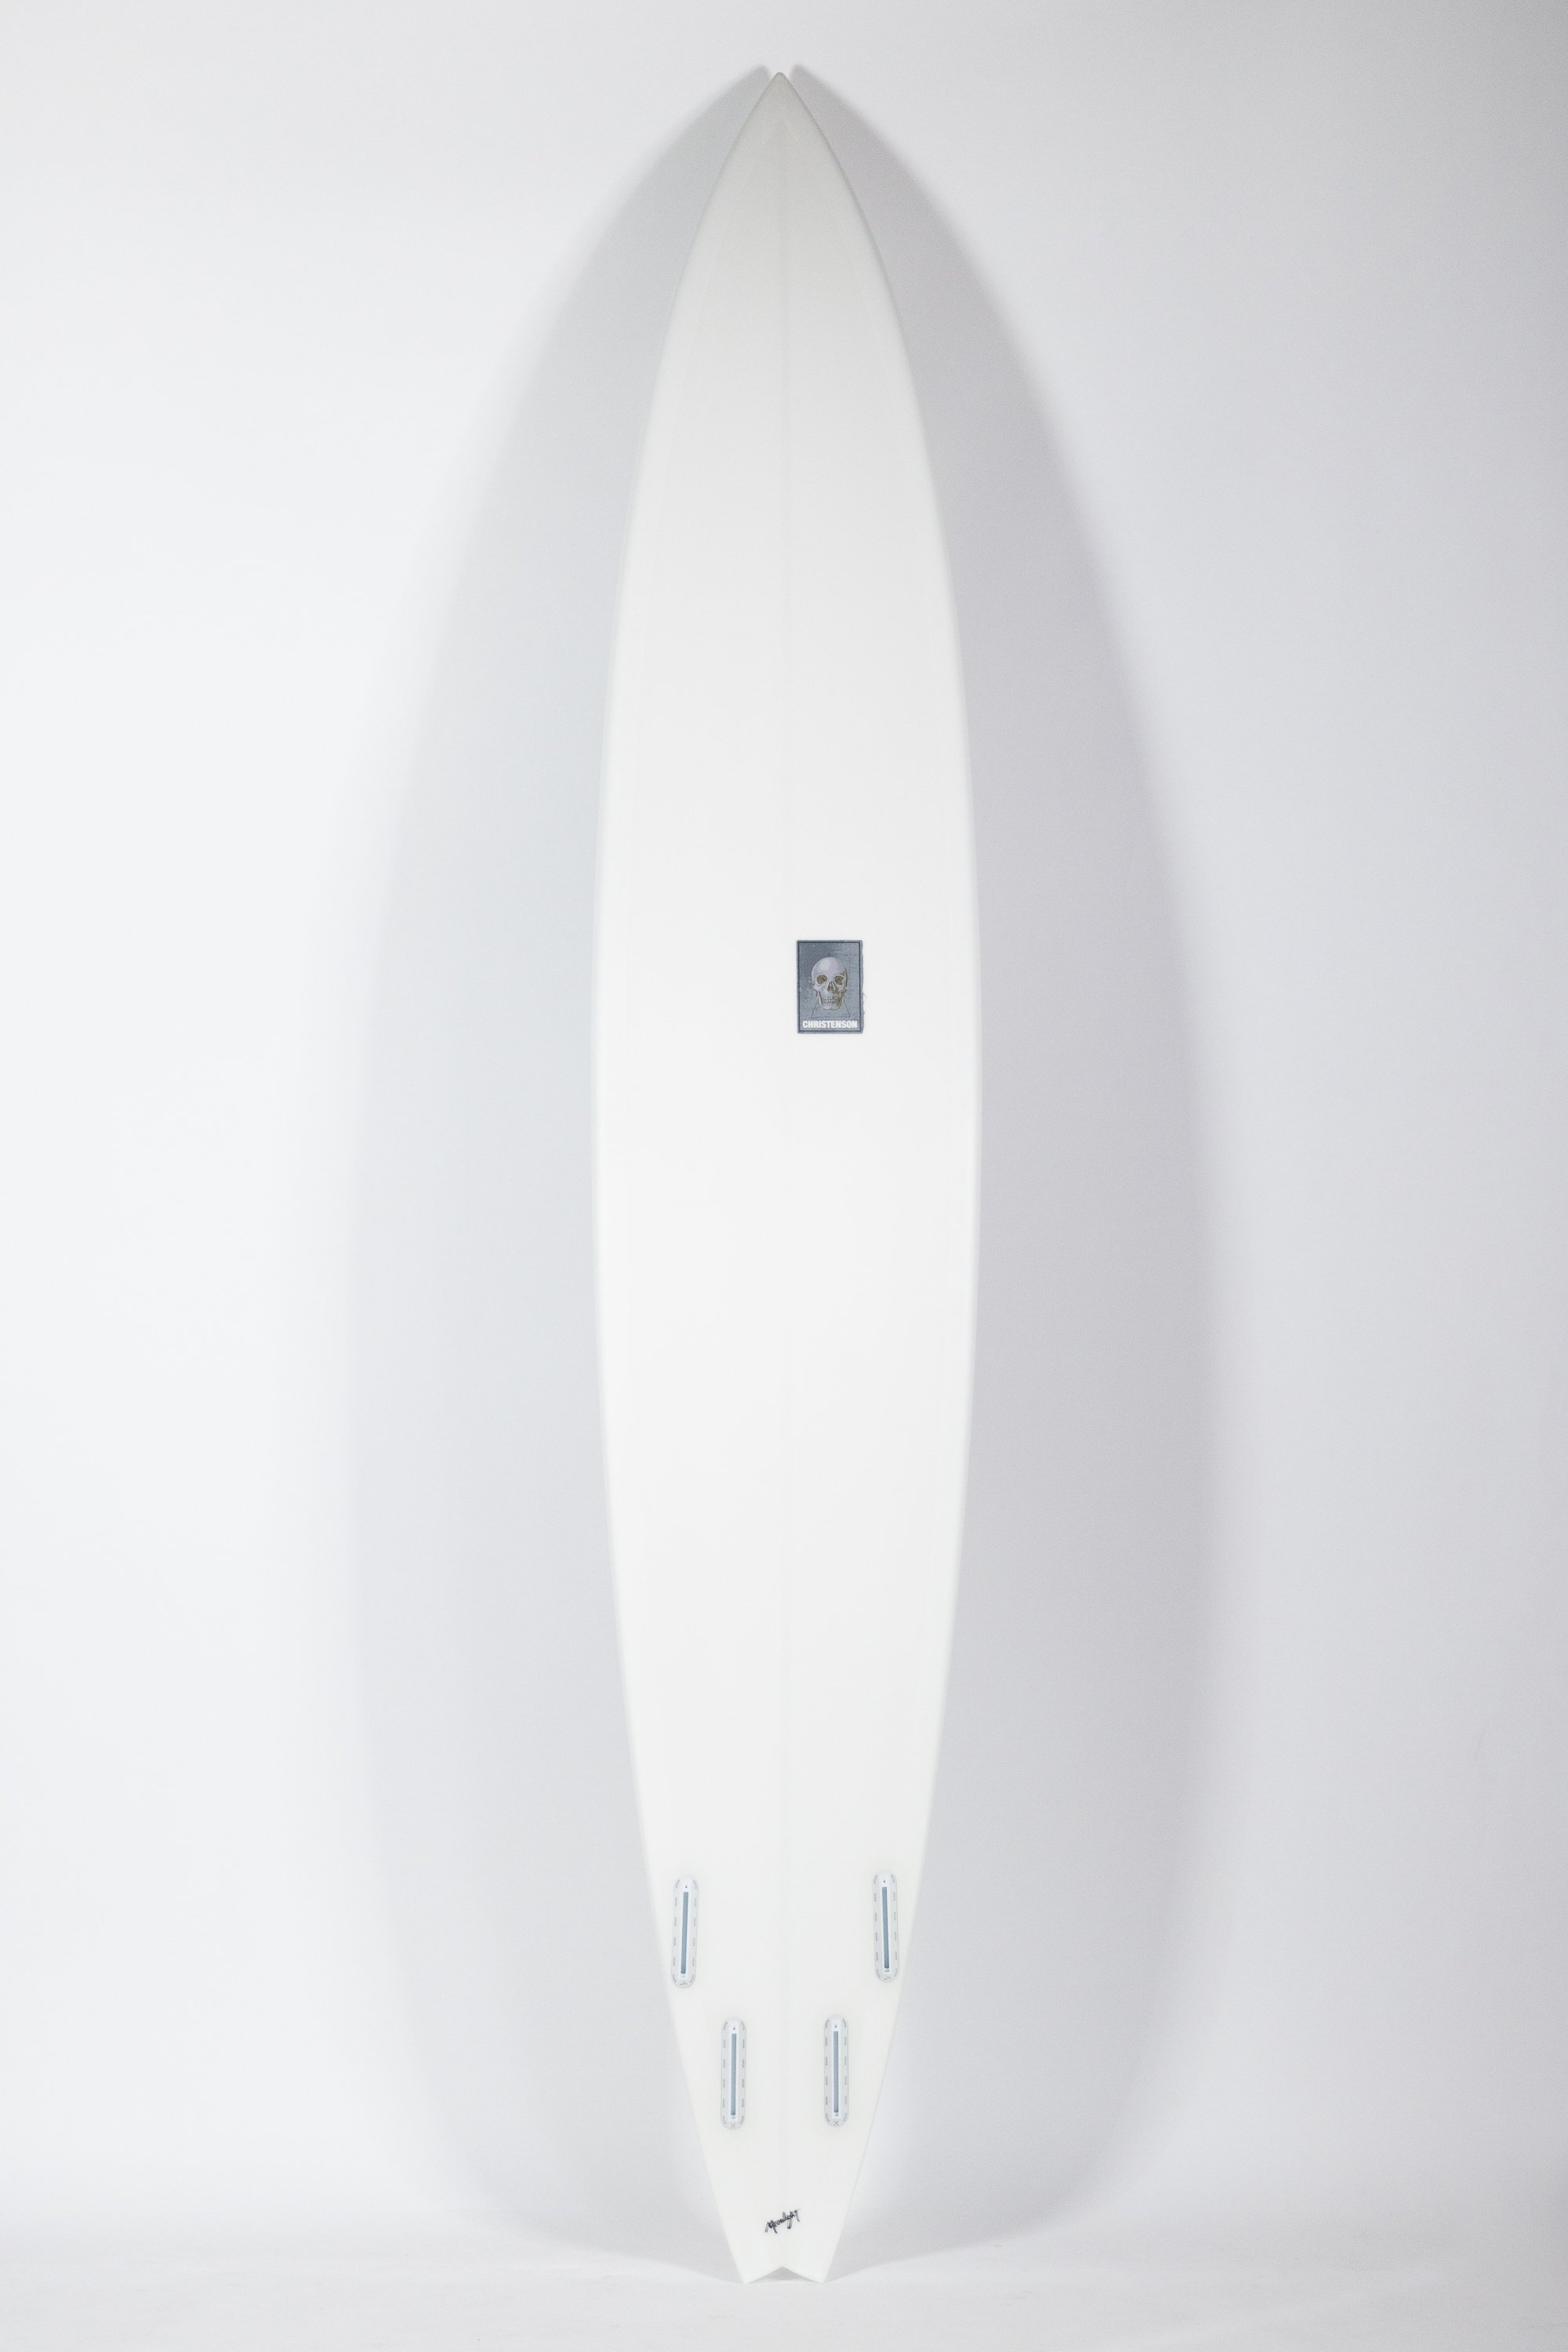 2023-Christenson Surfboards-230.jpg